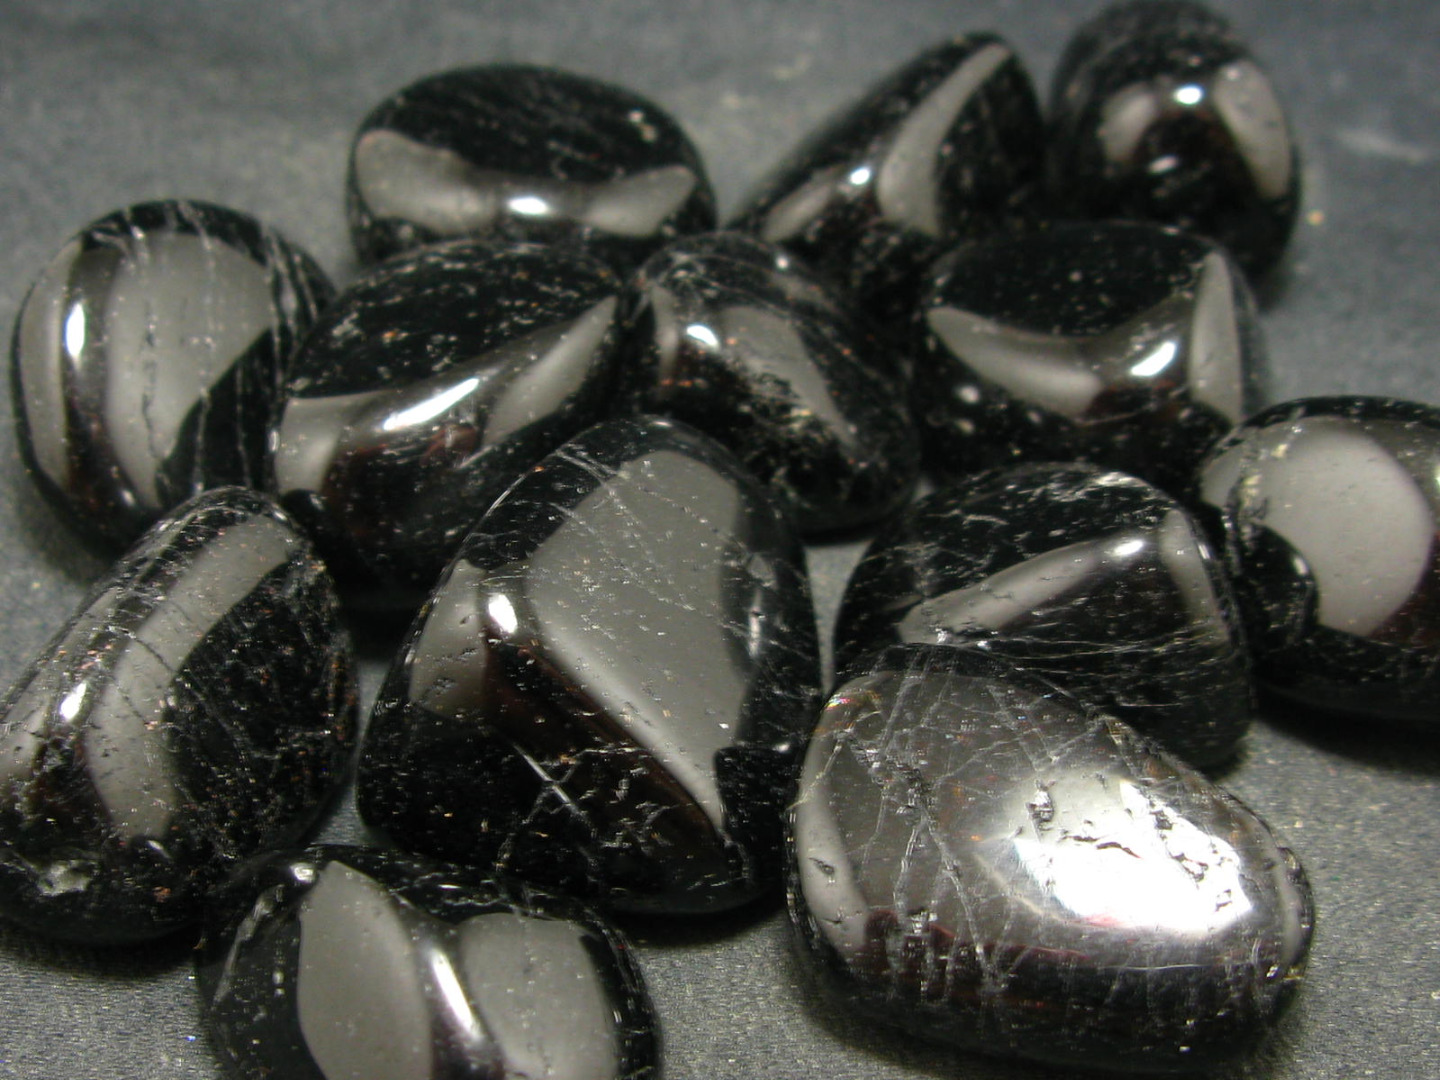 đá sapphire đen cho người sinh năm 2002